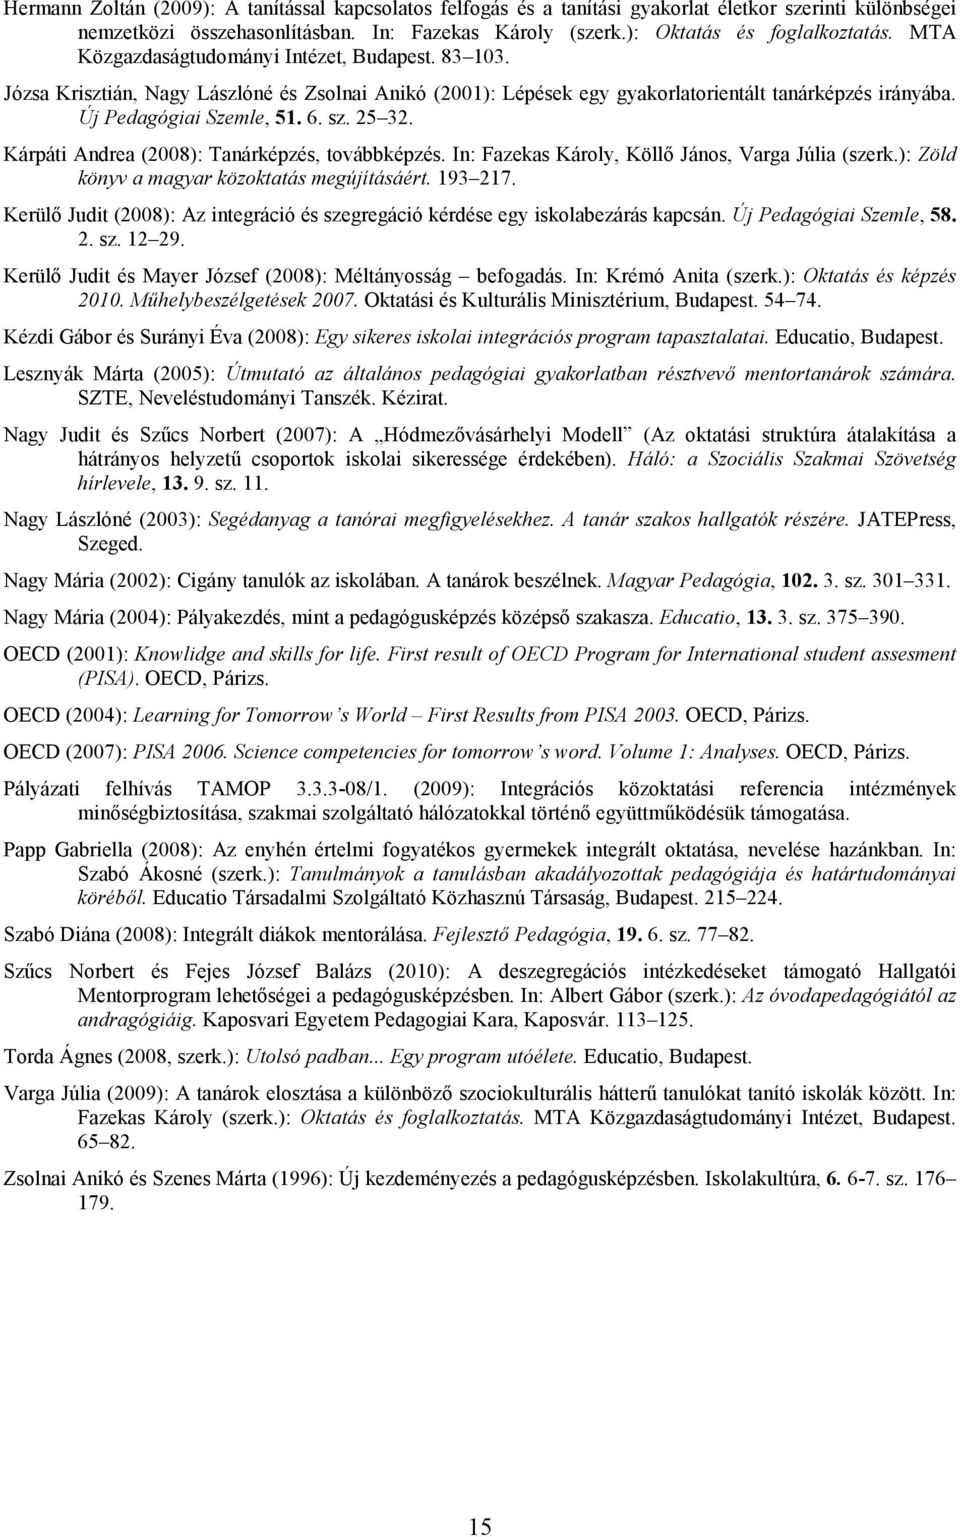 Kárpáti Andrea (2008): Tanárképzés, továbbképzés. In: Fazekas Károly, Köllő János, Varga Júlia (szerk.): Zöld könyv a magyar közoktatás megújításáért. 193 217.